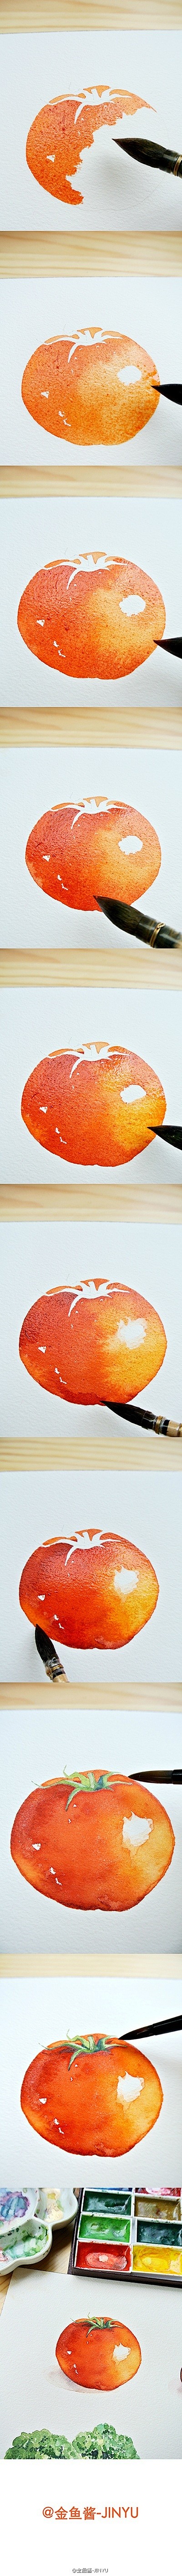 西红柿/番茄的水彩手绘过程 @金鱼酱-J...